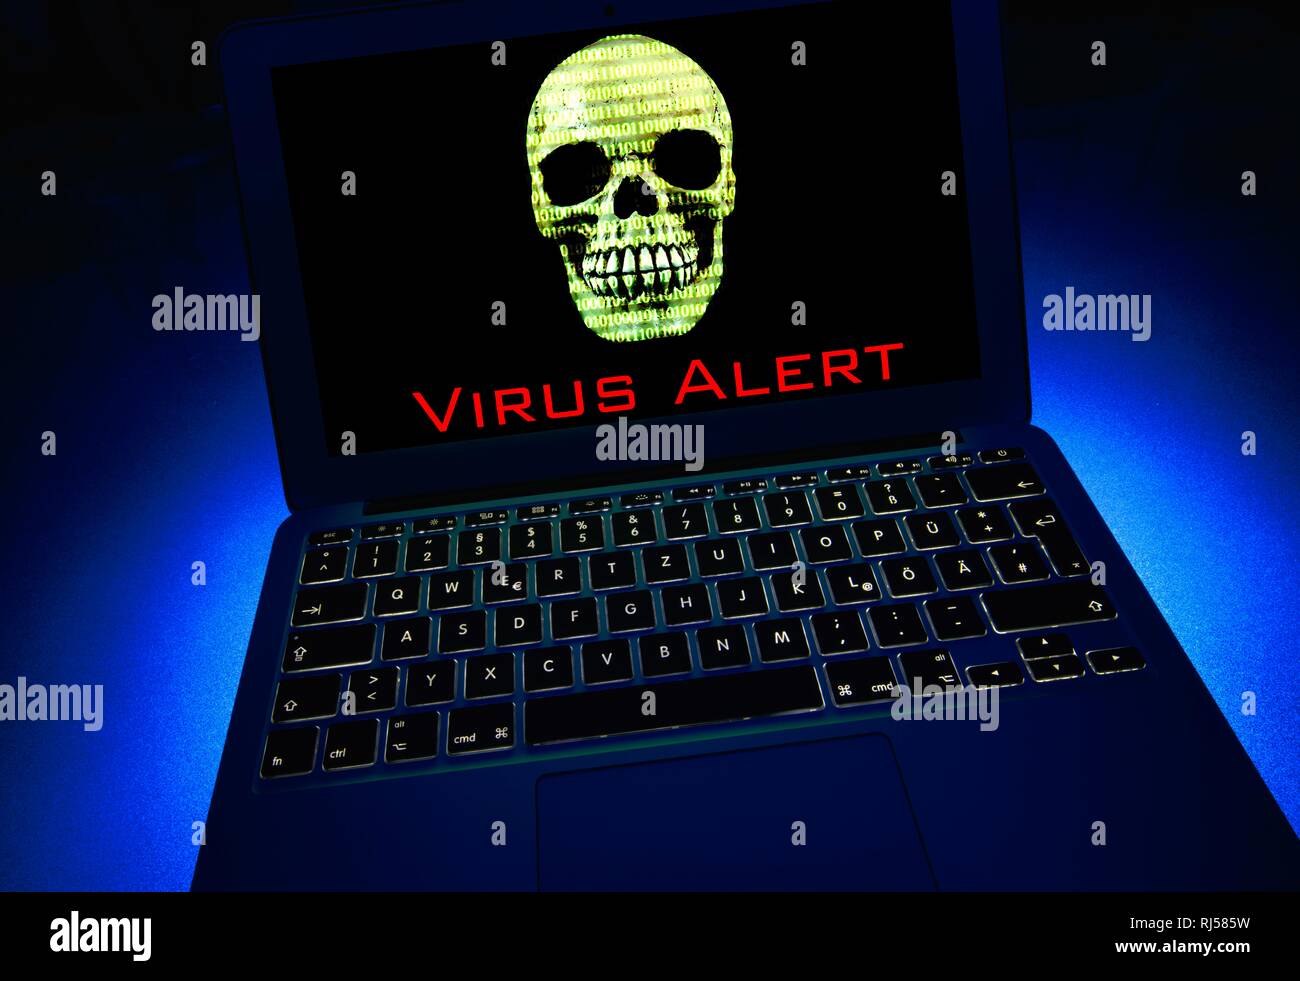 Ordinateur portable avec tête de mort et des nombres binaires à l'écran, l'image symbole du virus malware, alarme, la criminalité informatique Banque D'Images